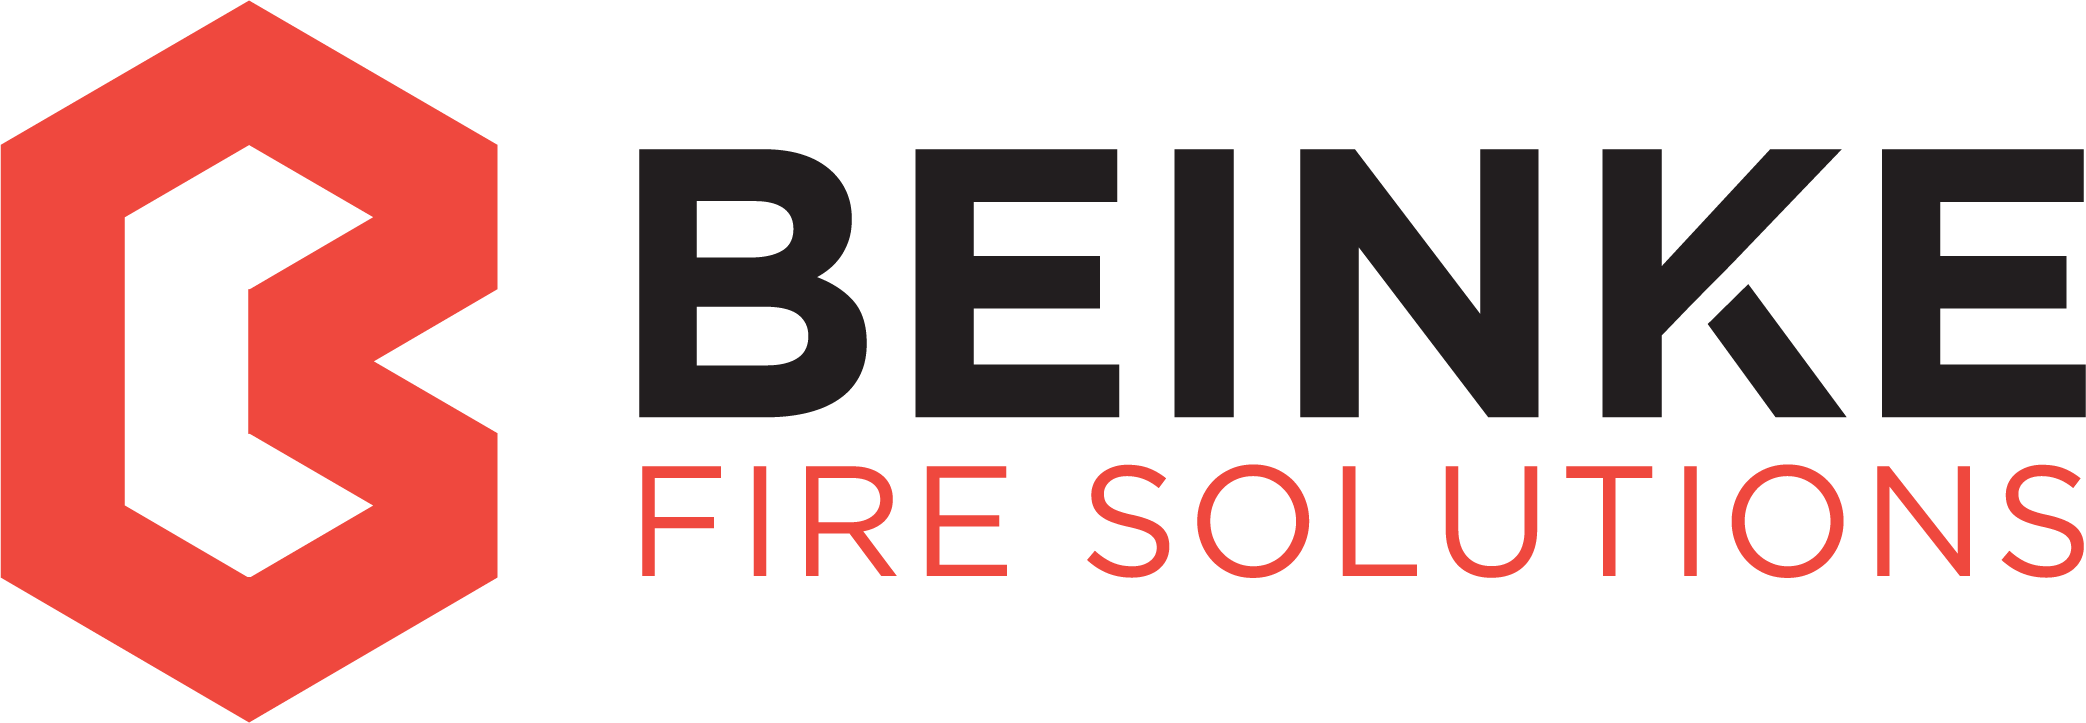 Beinke Fire Solutions